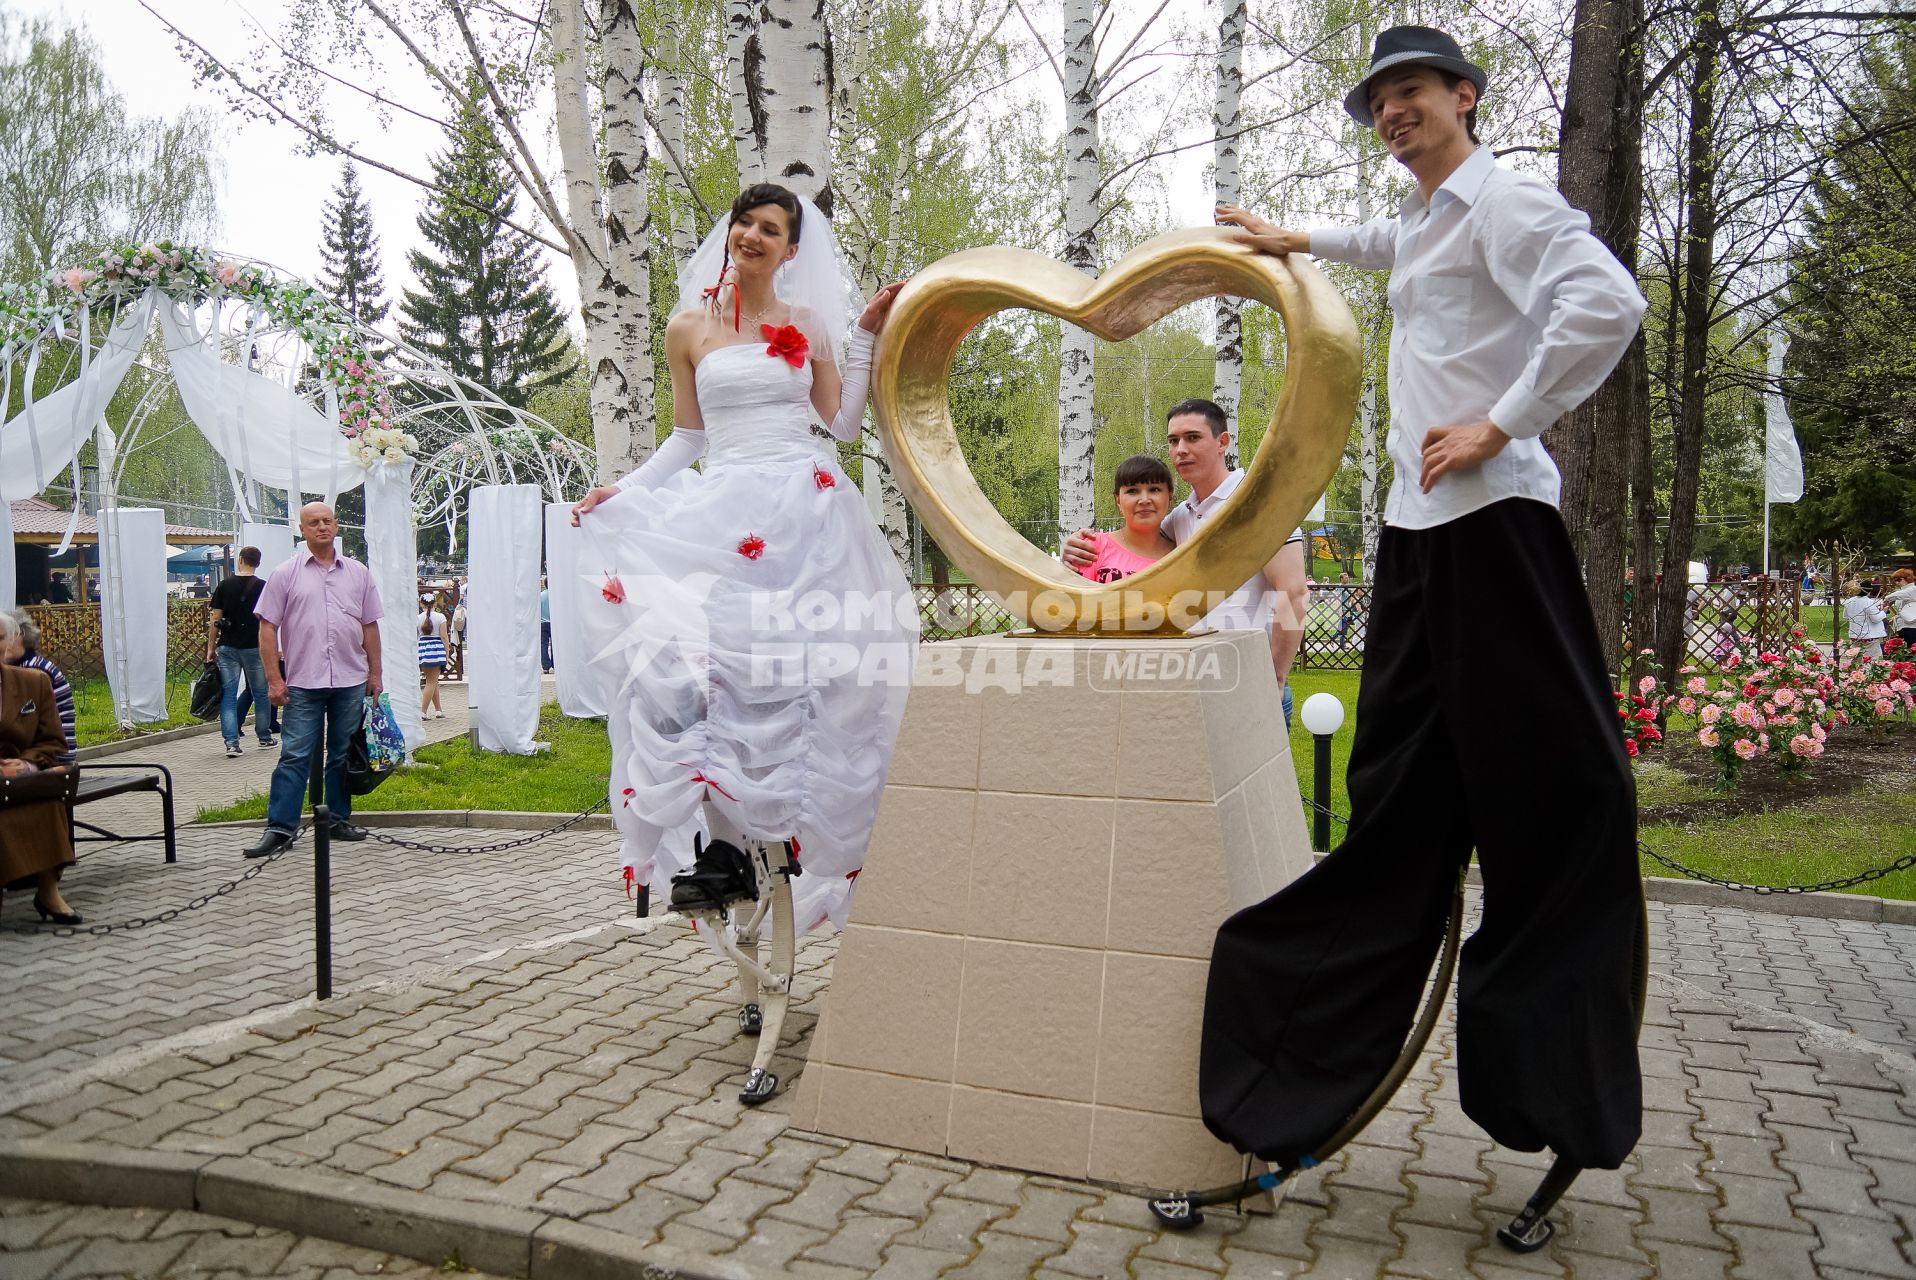 Молодожены Екатерина и Максим Березины из Екатеринбурга на церемонии бракосочетания, под свадебные наряды ребята надели `джоли-джампинг` - ходули с пружинами.